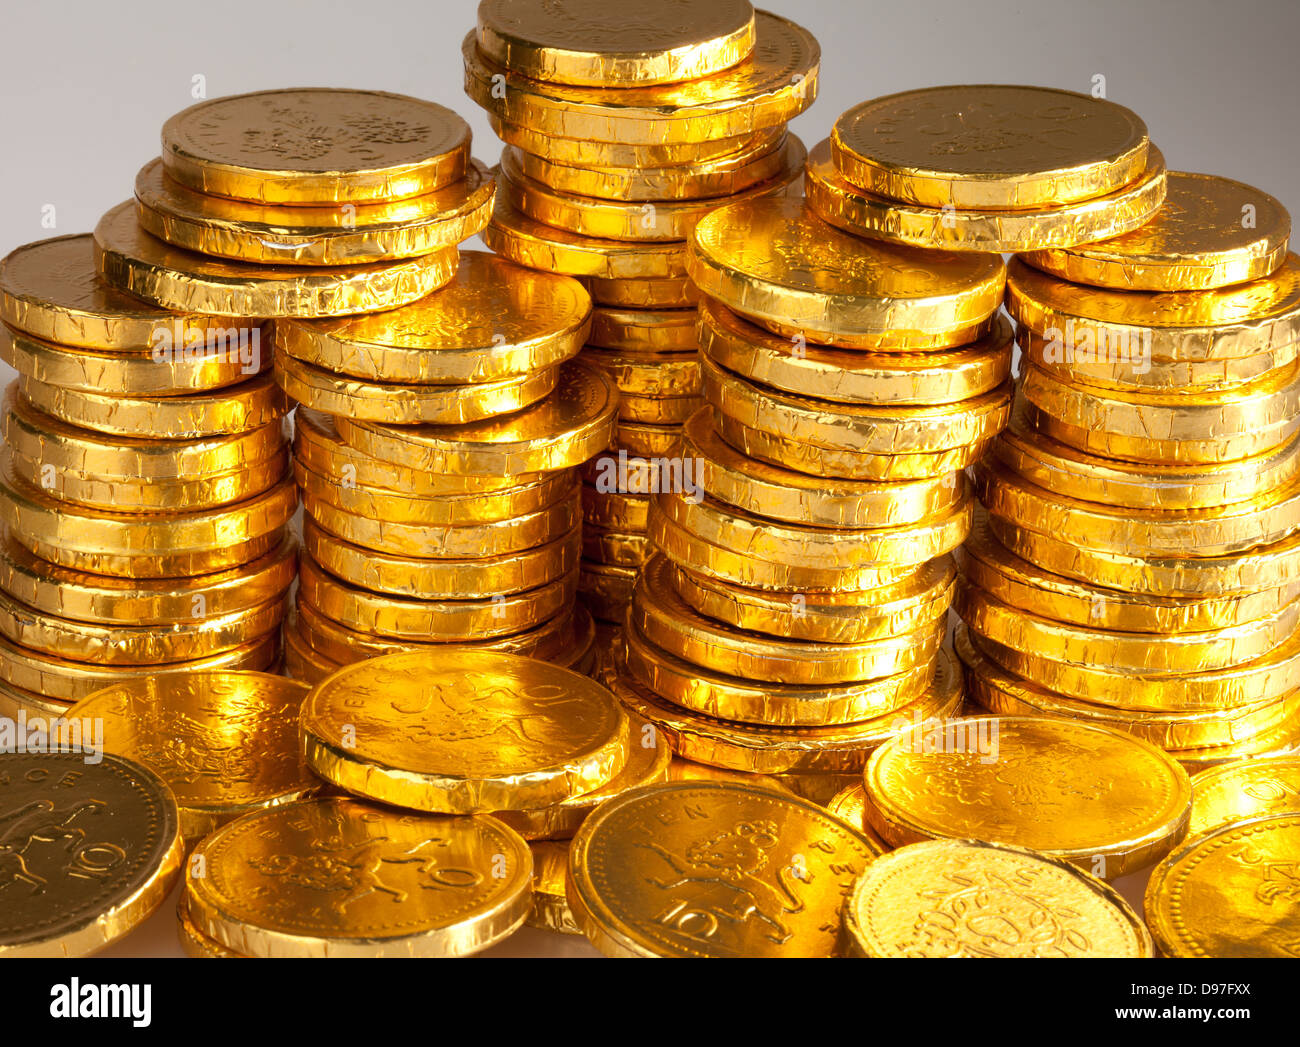 Ein Stapel von Goldschokolade Münzen in einem goldenen eingewickelt Folie  Stockfotografie - Alamy